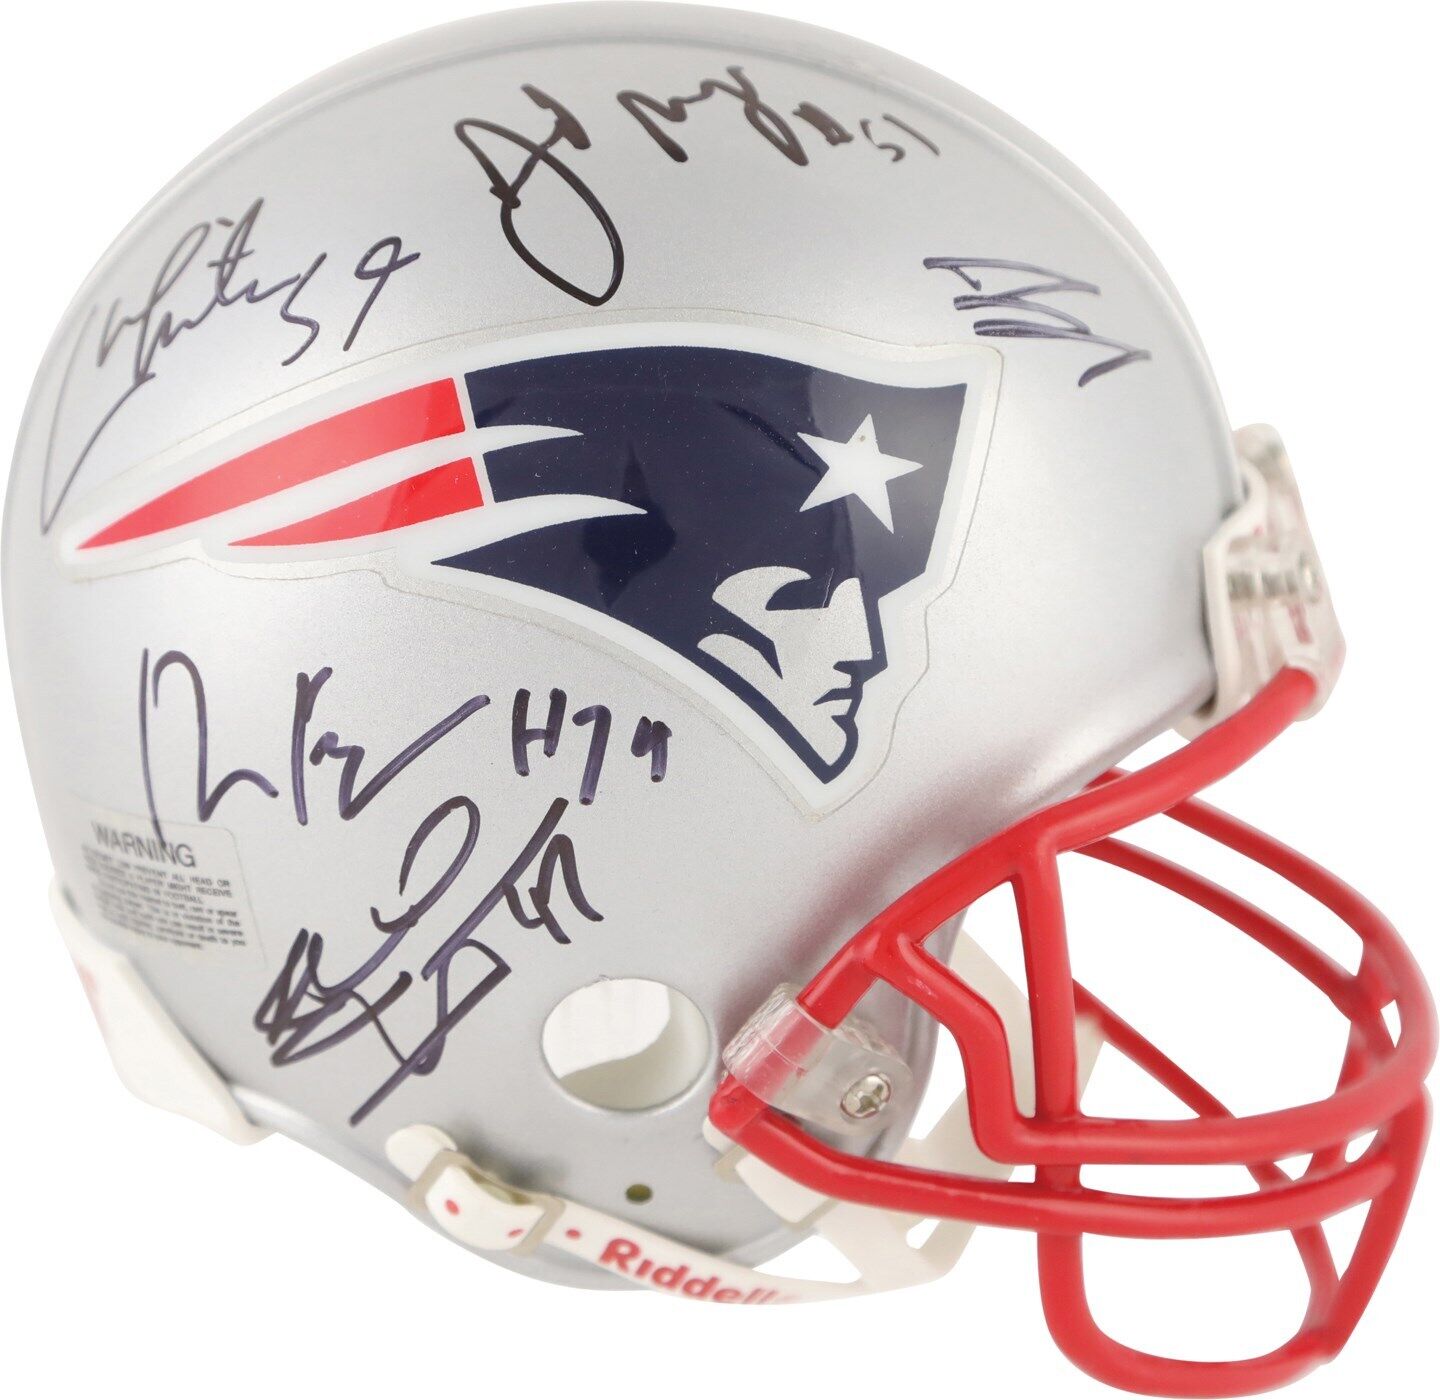 Tom Brady 2014 New England Patriots Super Bowl Champ Team Signed